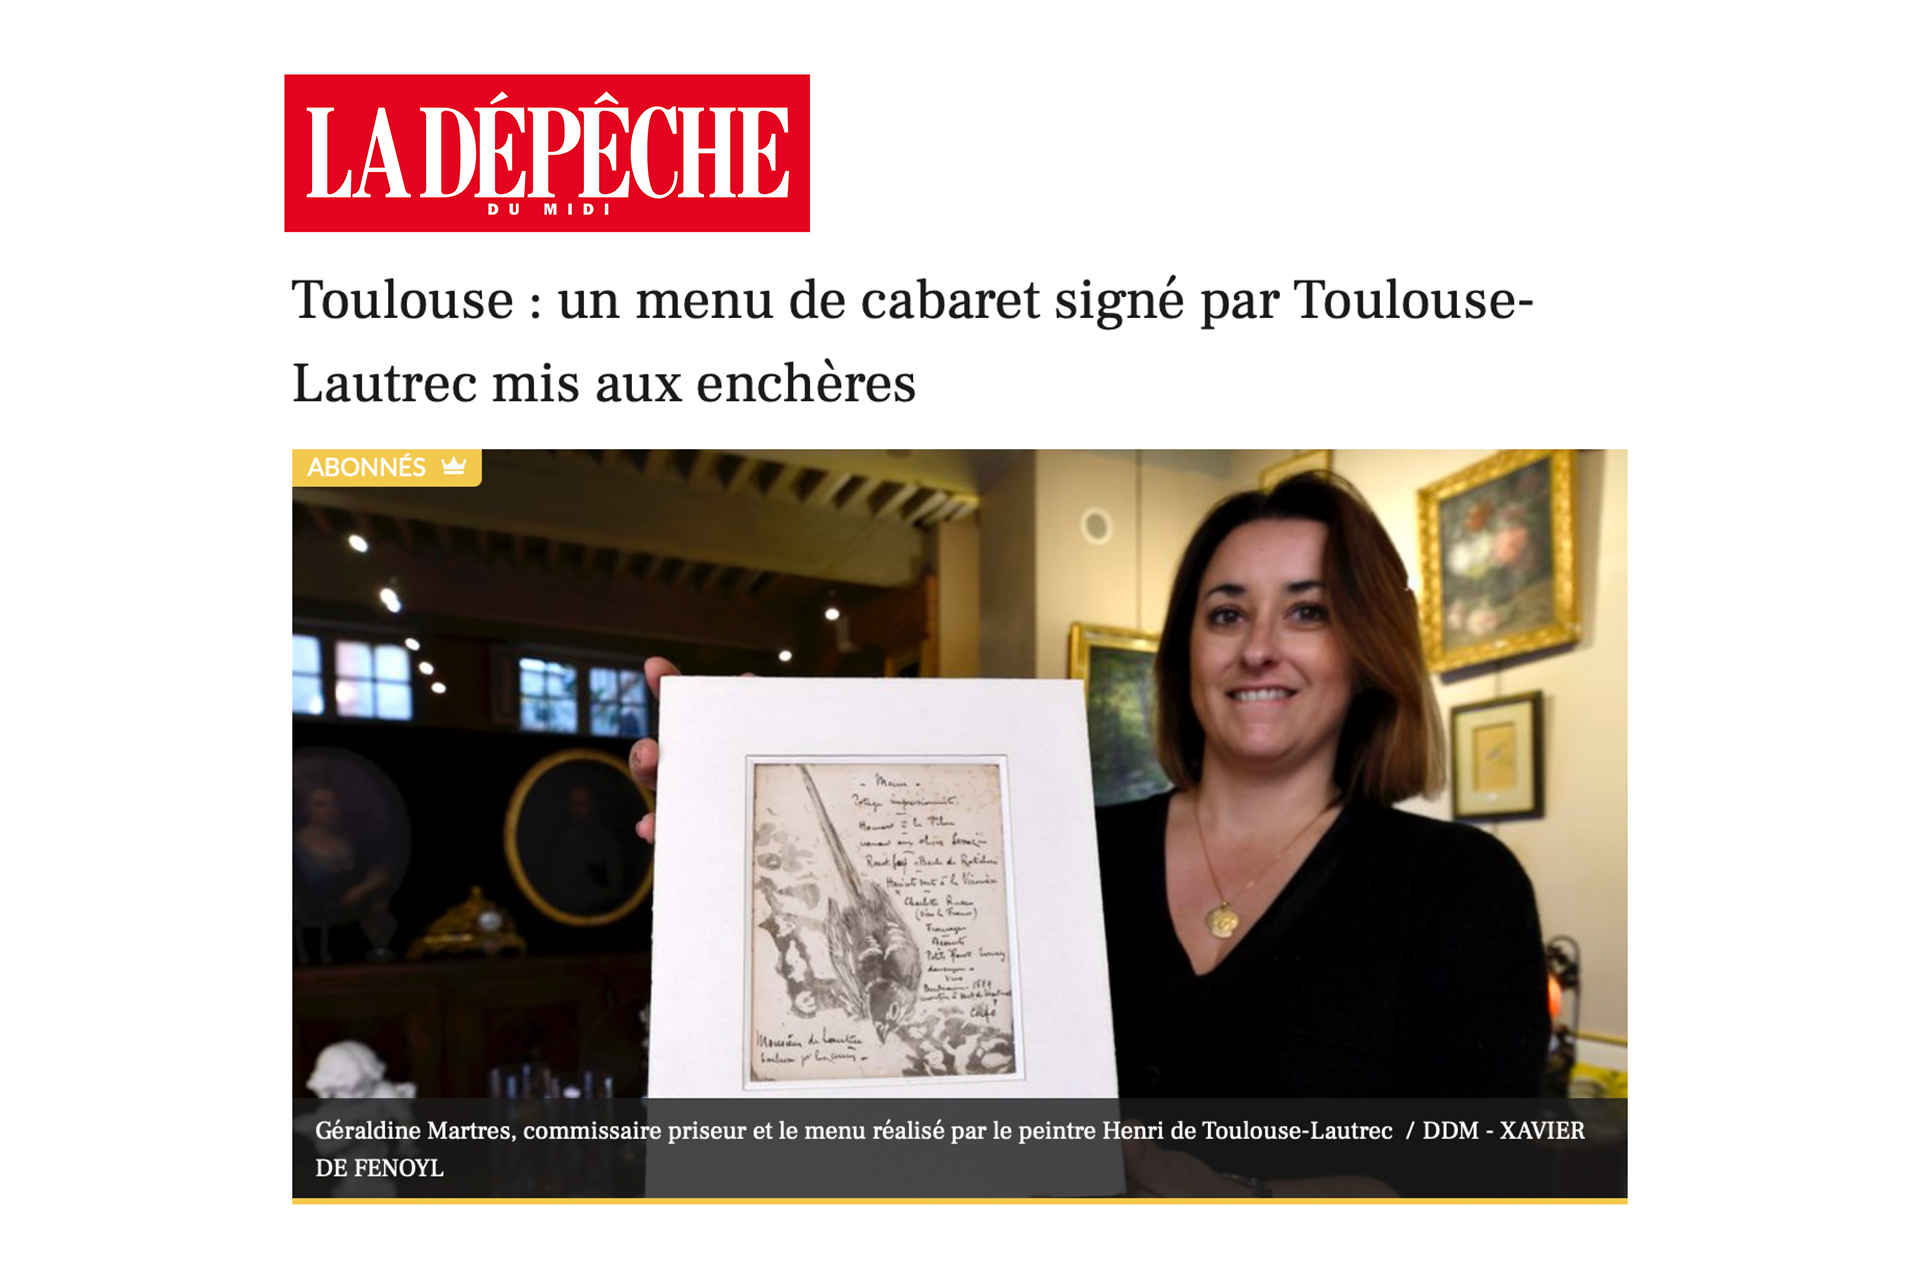 « Toulouse : un menu de cabaret signé par Toulouse-Lautrec mis aux enchères », 27 avril 2022